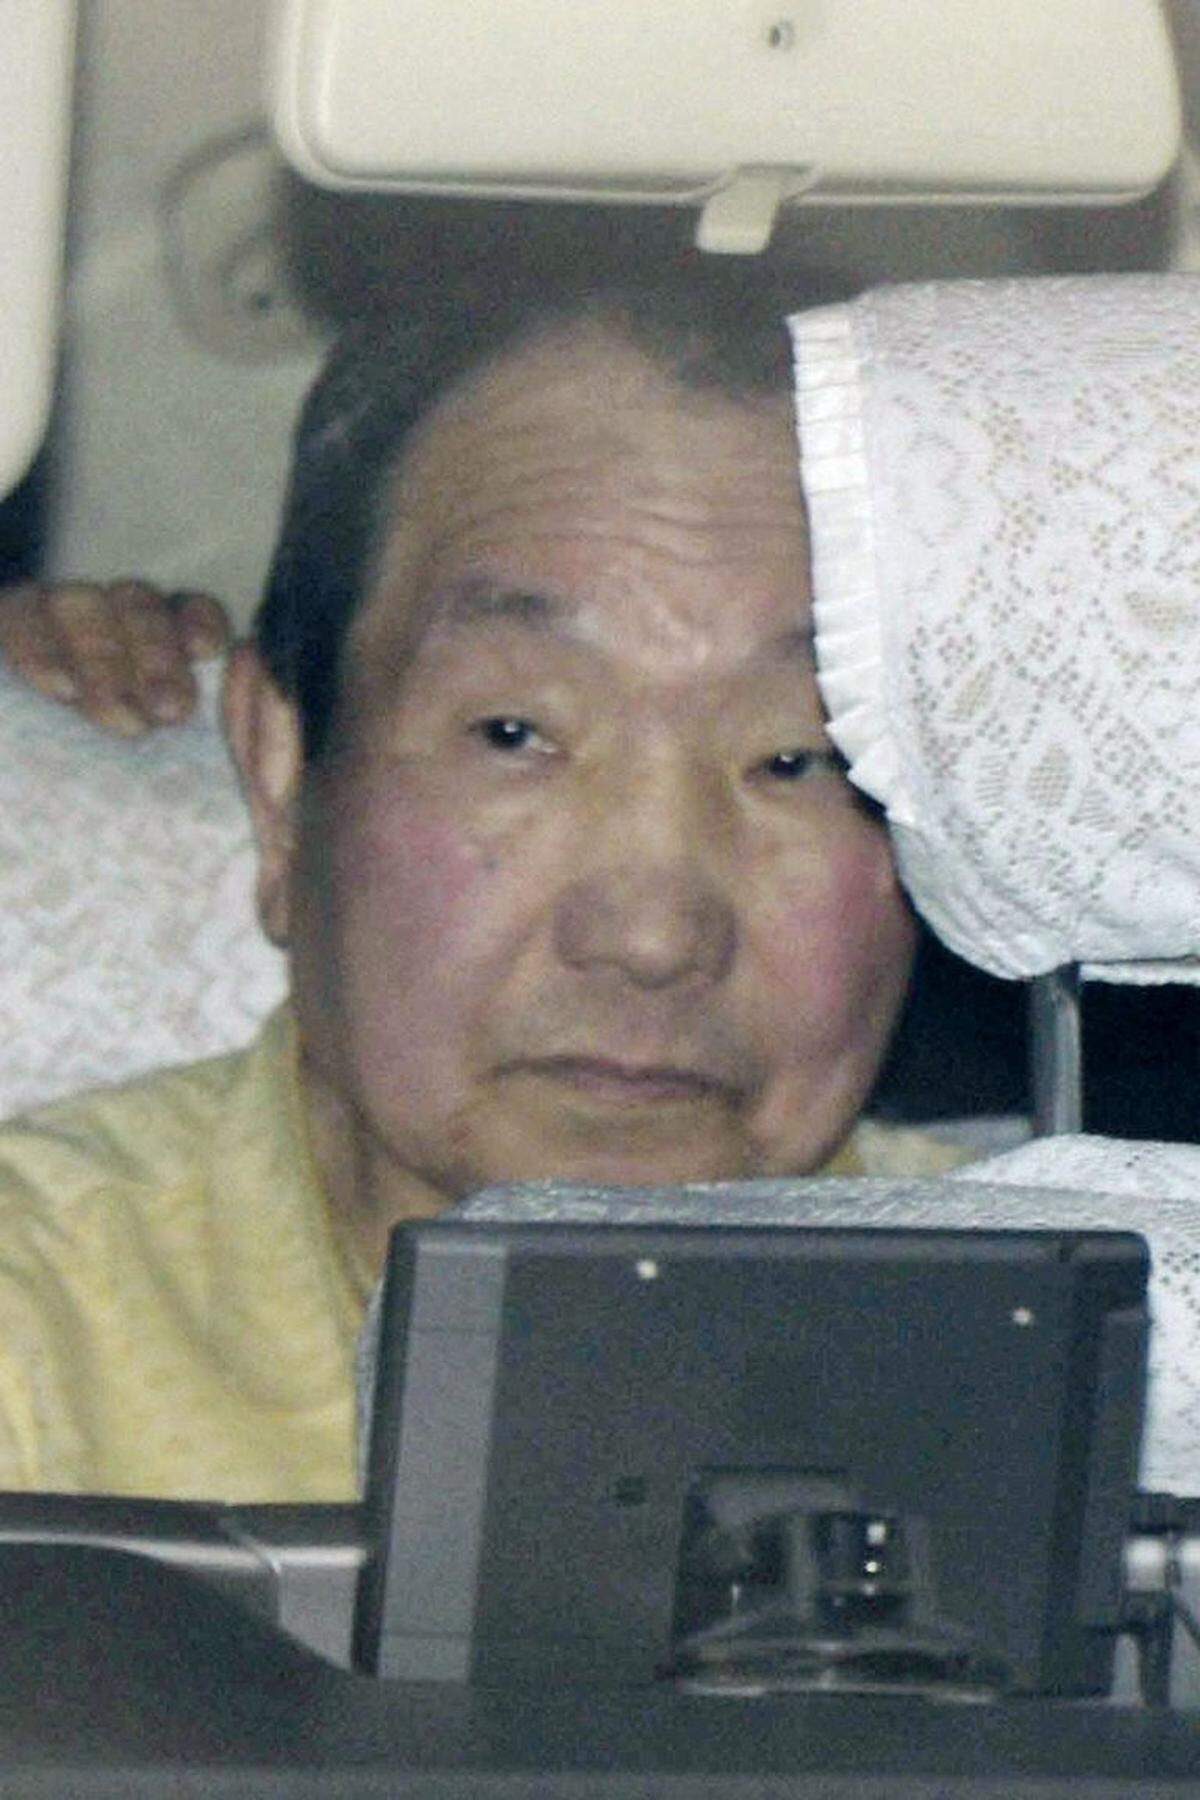 Mit acht Hinrichtungen ist die Anzahl der Hinrichtungen 2013 im Vergleich zum Vorjahr um fünf Fälle gestiegen. Am 27. März hat ein Gericht die Todesstrafe gegen den 78-jährigen Iwao Hakamada ausgesetzt und ein neues Verfahren angeordnet. Er wartete über 30 Jahre wegen Mordes auf die Vollstreckung der Strafe.